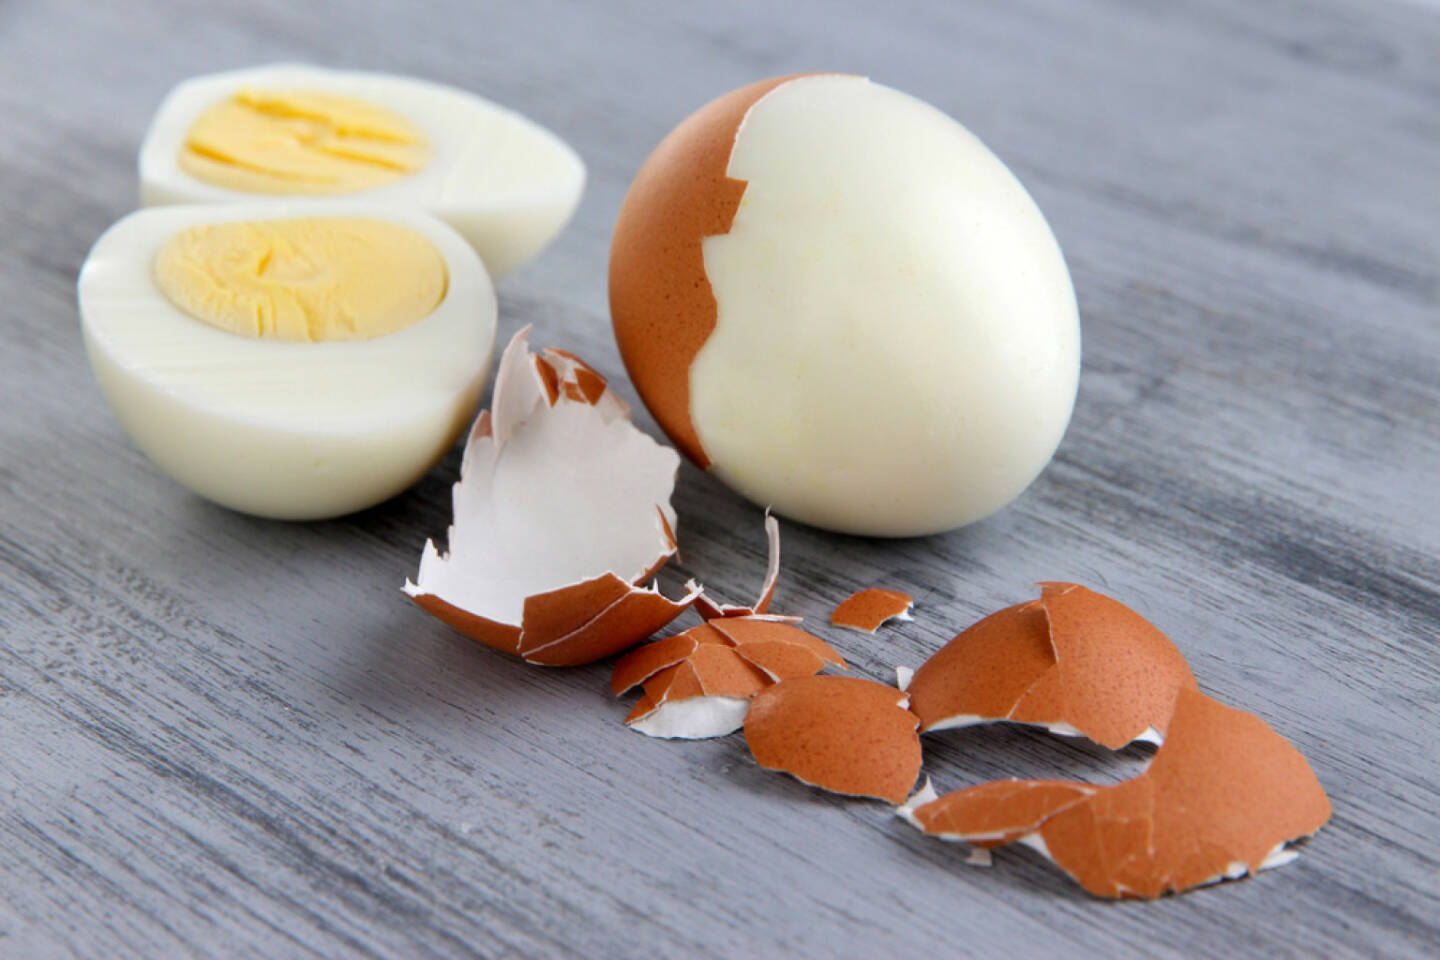 Eier, gekocht, hart, faul, http://www.shutterstock.com/de/pic-186065717/stock-photo-peeled-boiled-egg-on-wooden-background.html? 